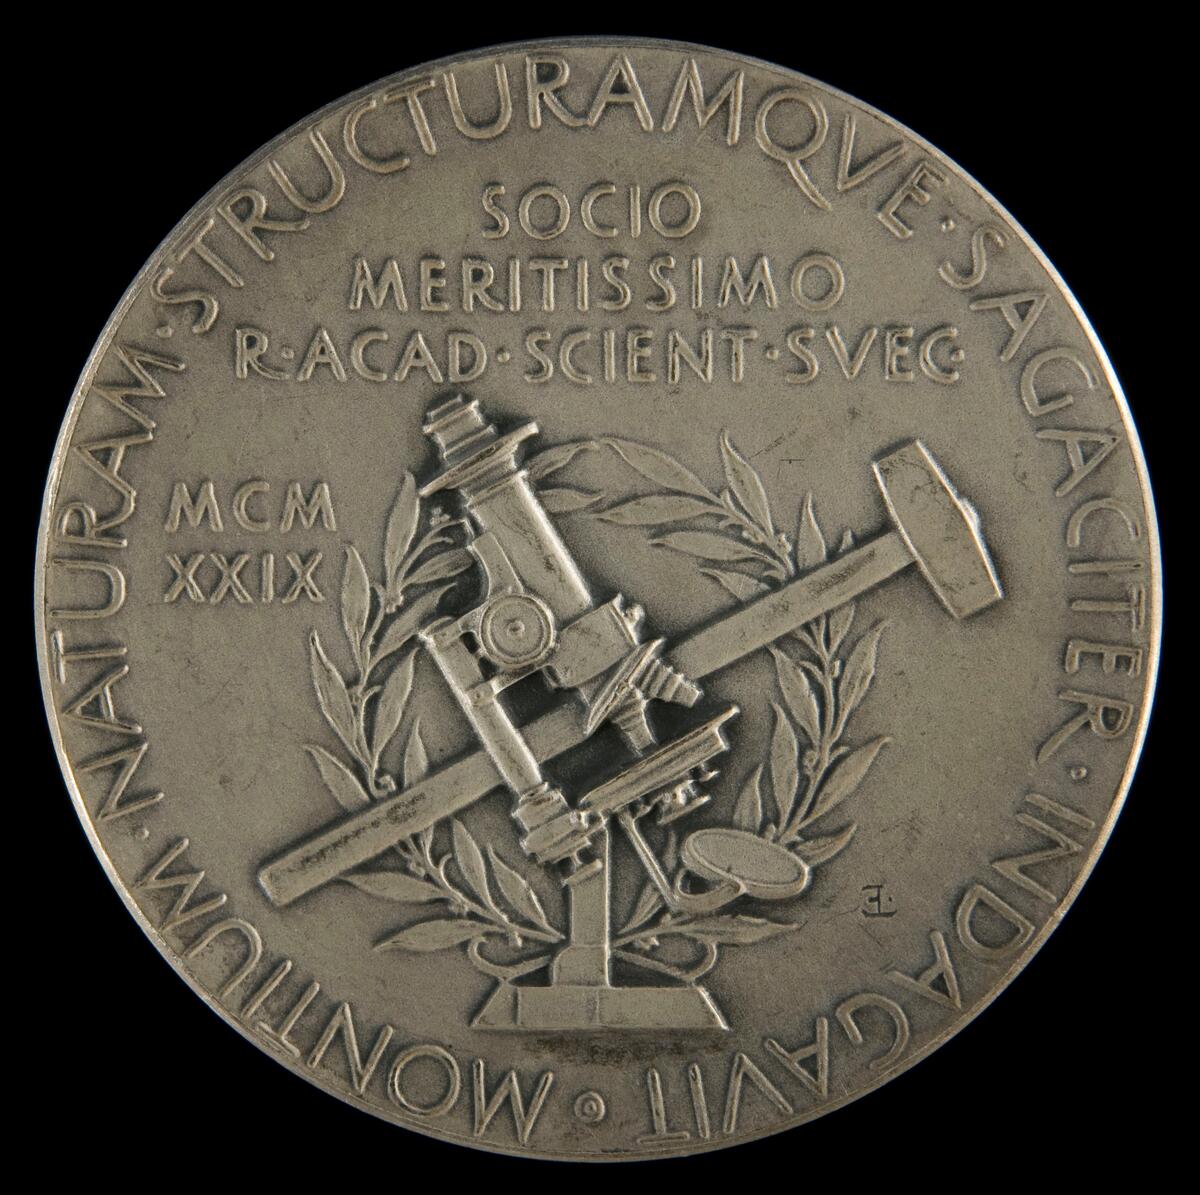 Medalj Alfred Elis Törnebohm. Vetenskapsakademin. Härnösands Allmänna Läroverk

